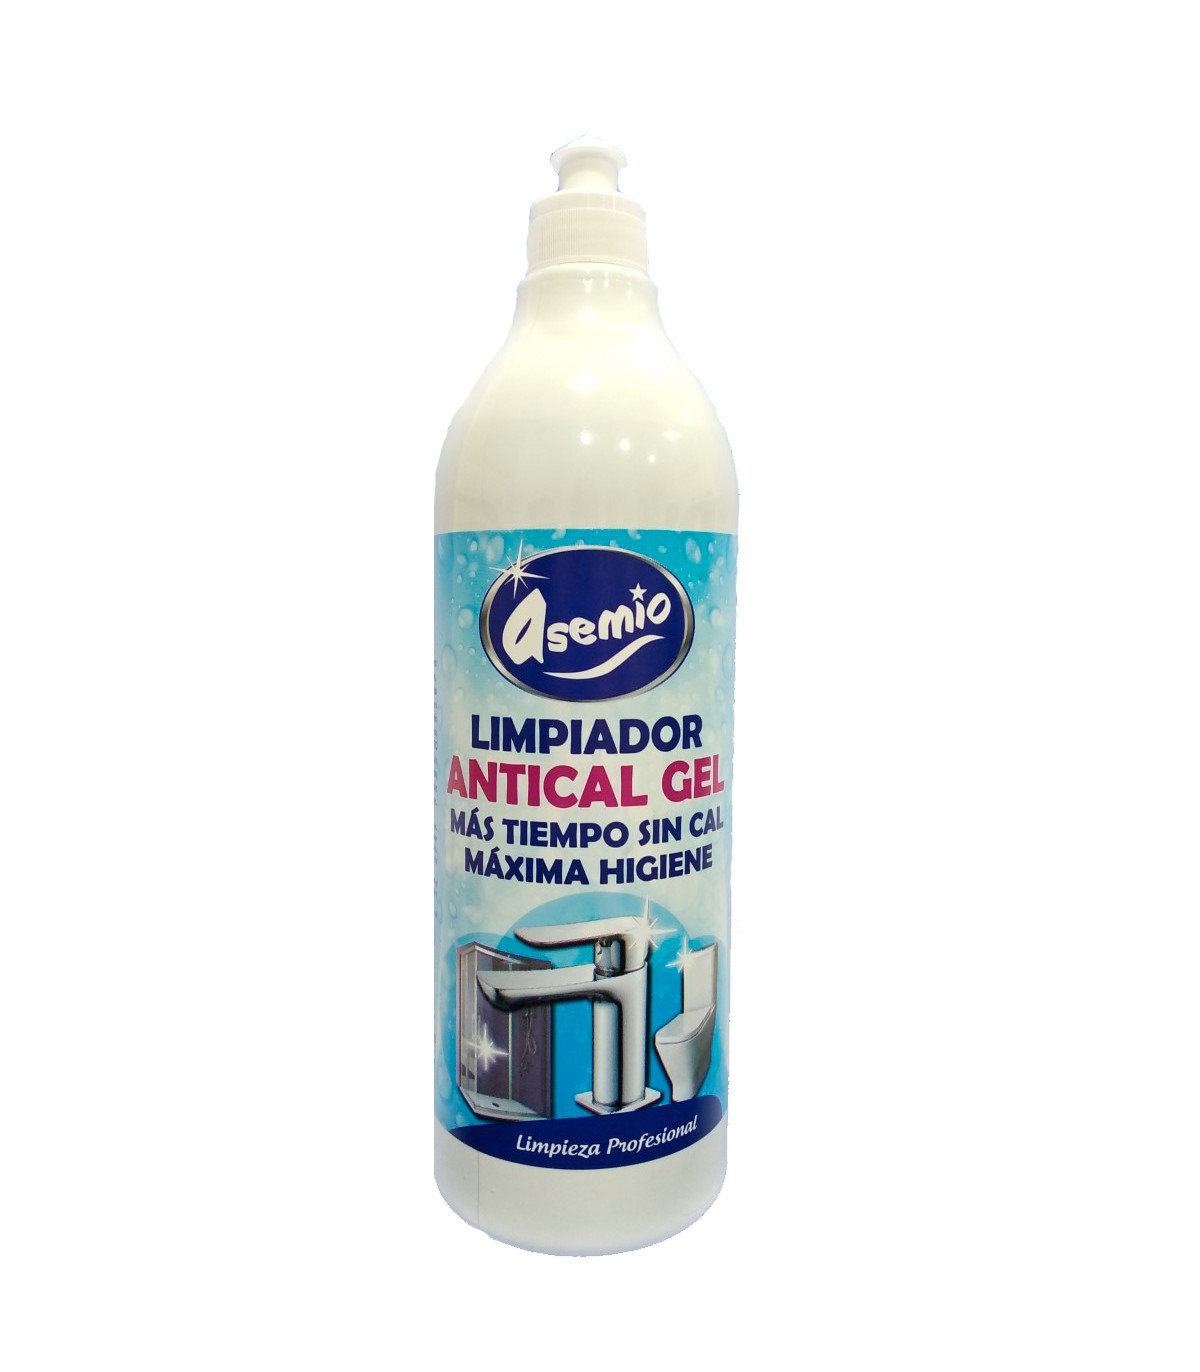 Limpiador superficies baño: higienizante y antical